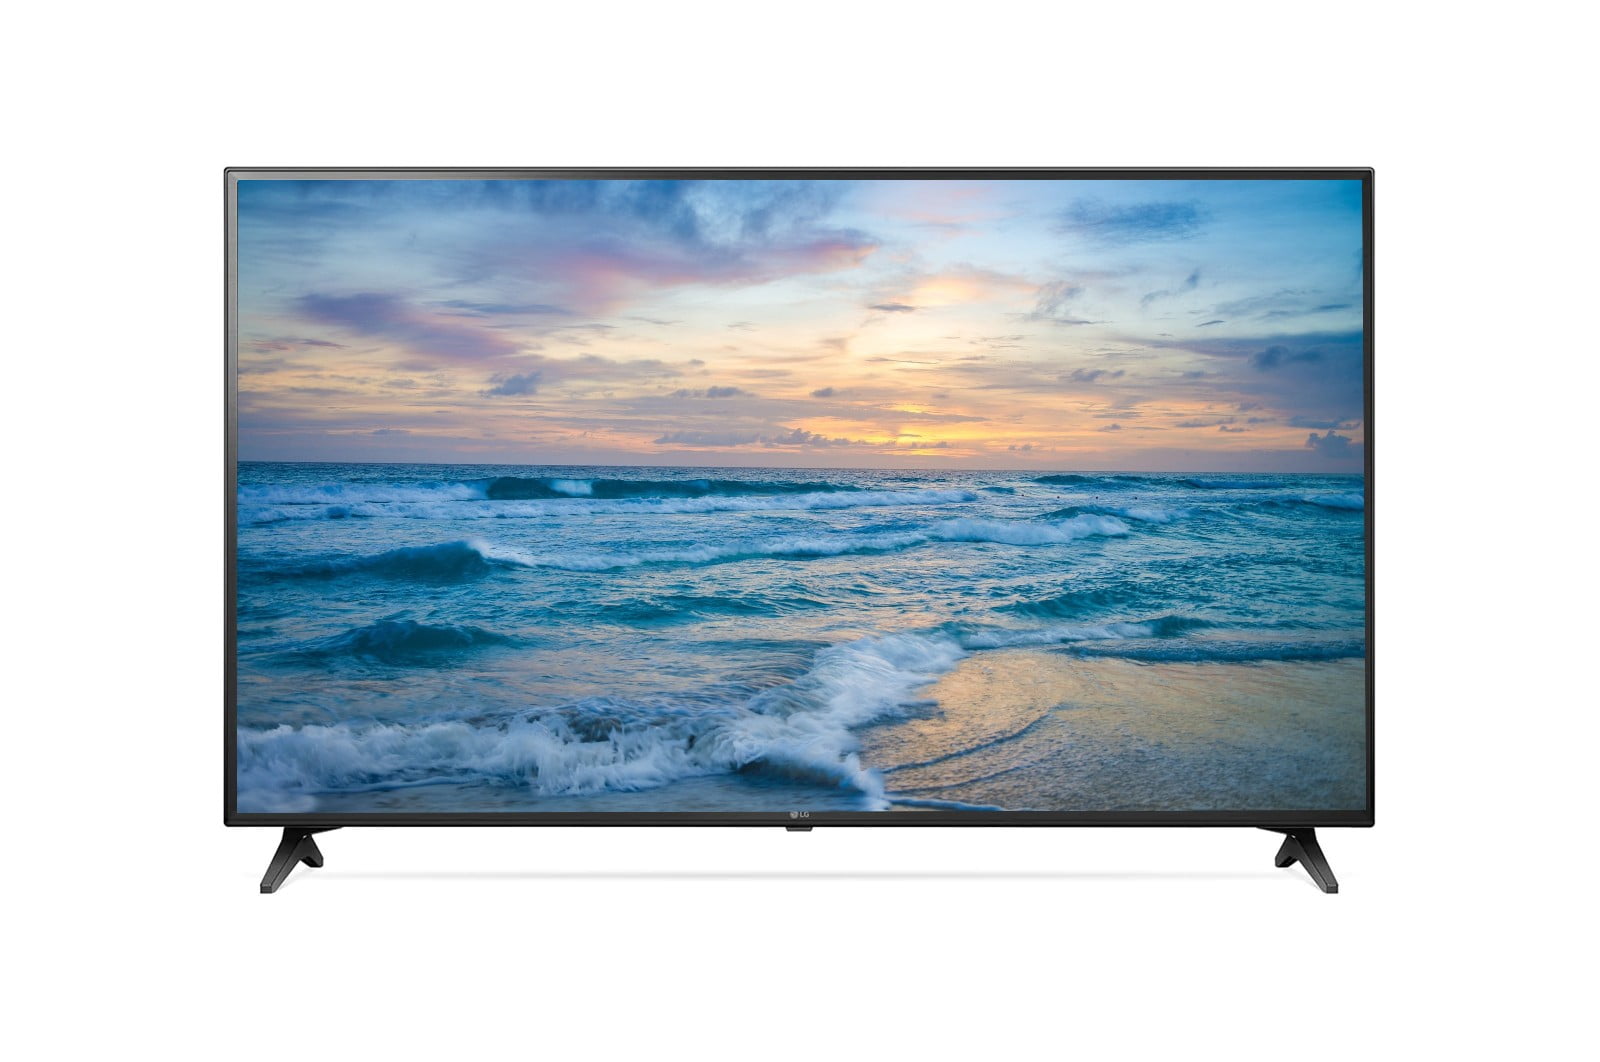 Pantalla LED LG 75 Ultra HD 4K Smart TV 75UP7760PSB